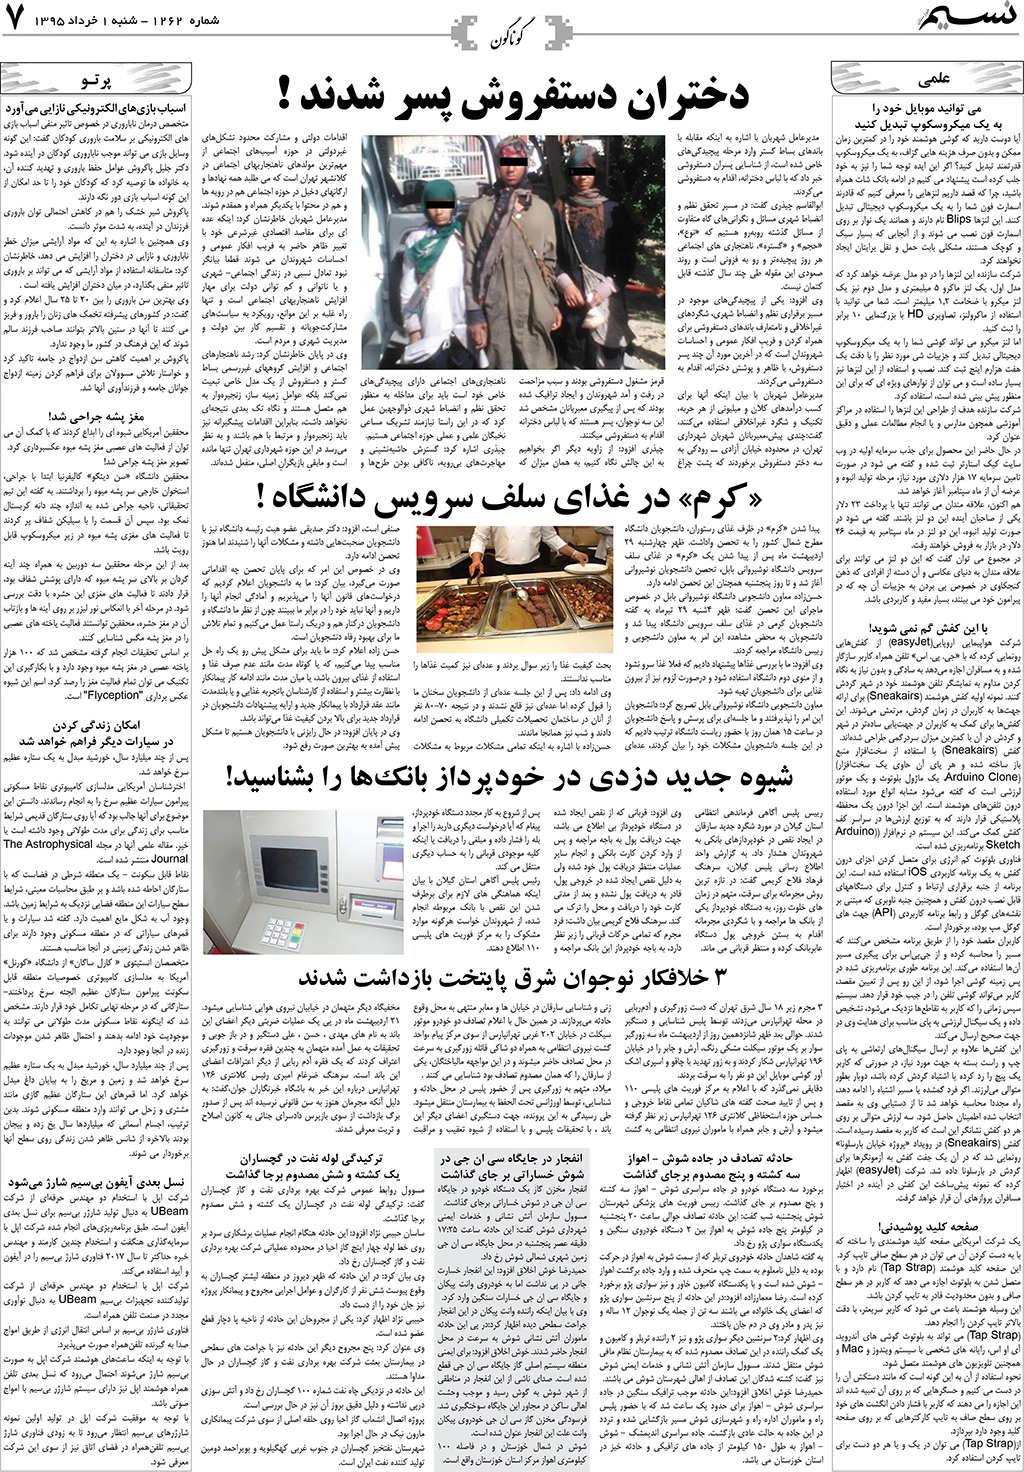 صفحه گوناگون روزنامه نسیم شماره 1262